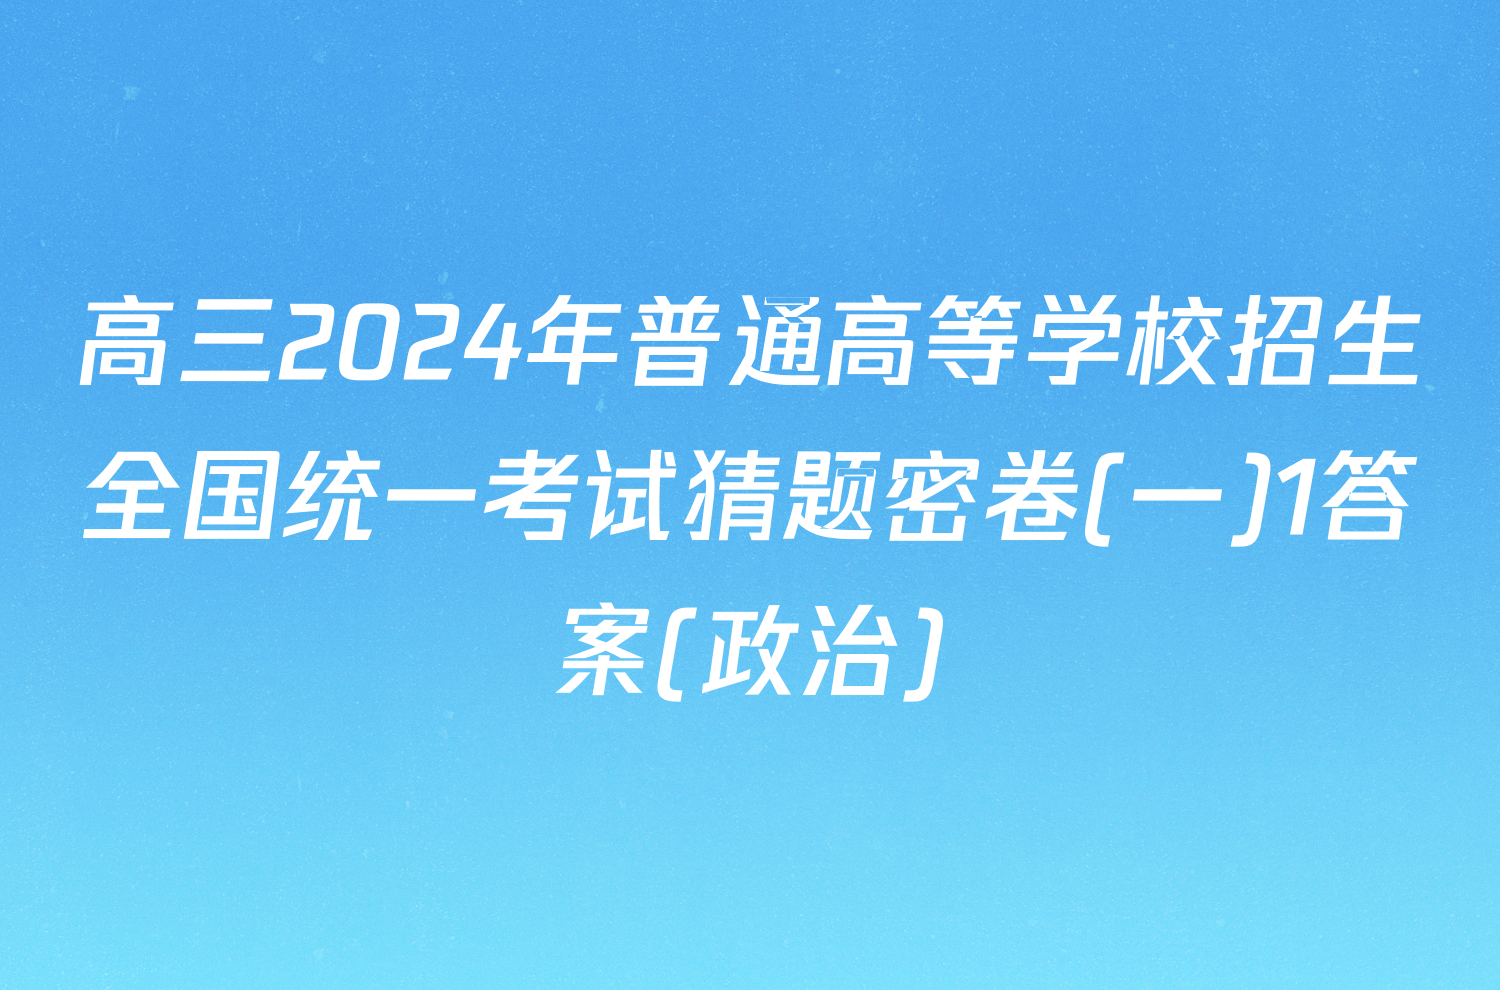 高三2024年普通高等学校招生全国统一考试猜题密卷(一)1答案(政治)